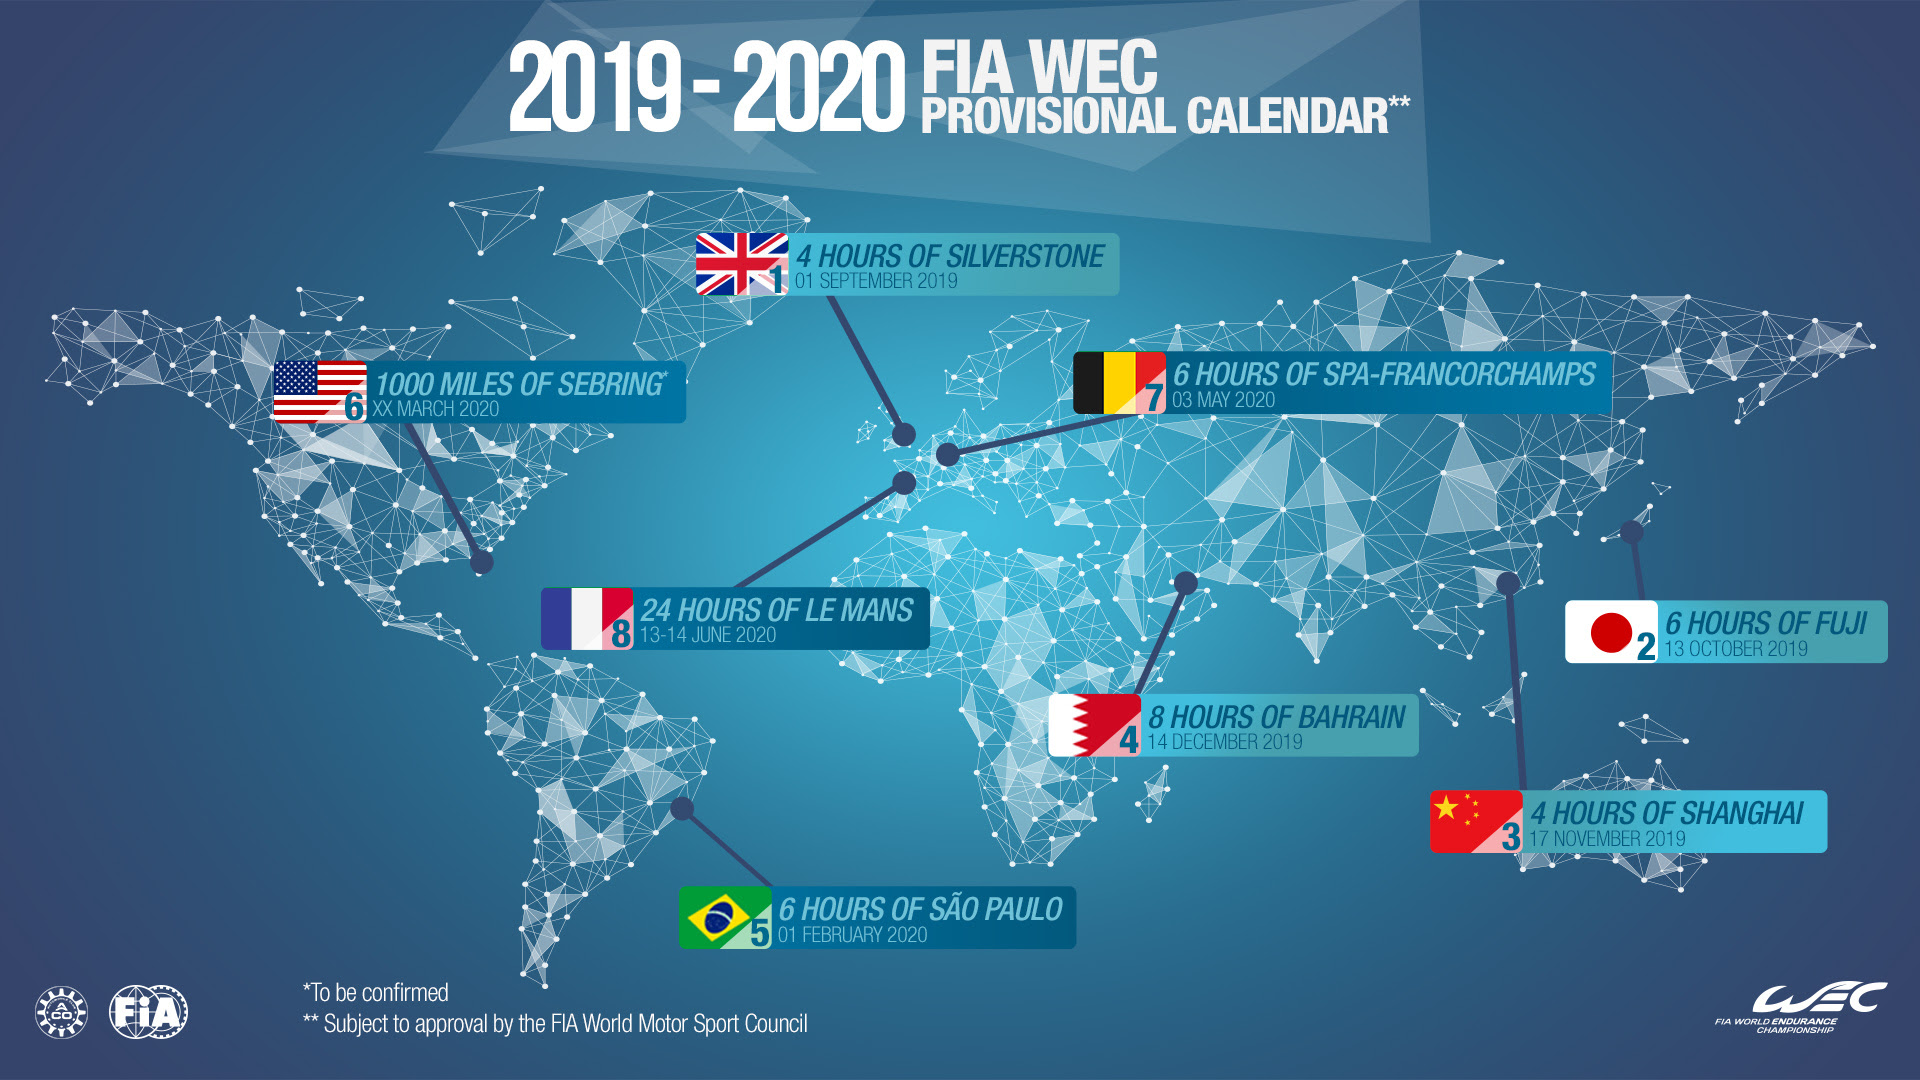 Calendário 2019/20 do Mundial de Endurance apresenta novidades. Brasil está confirmado